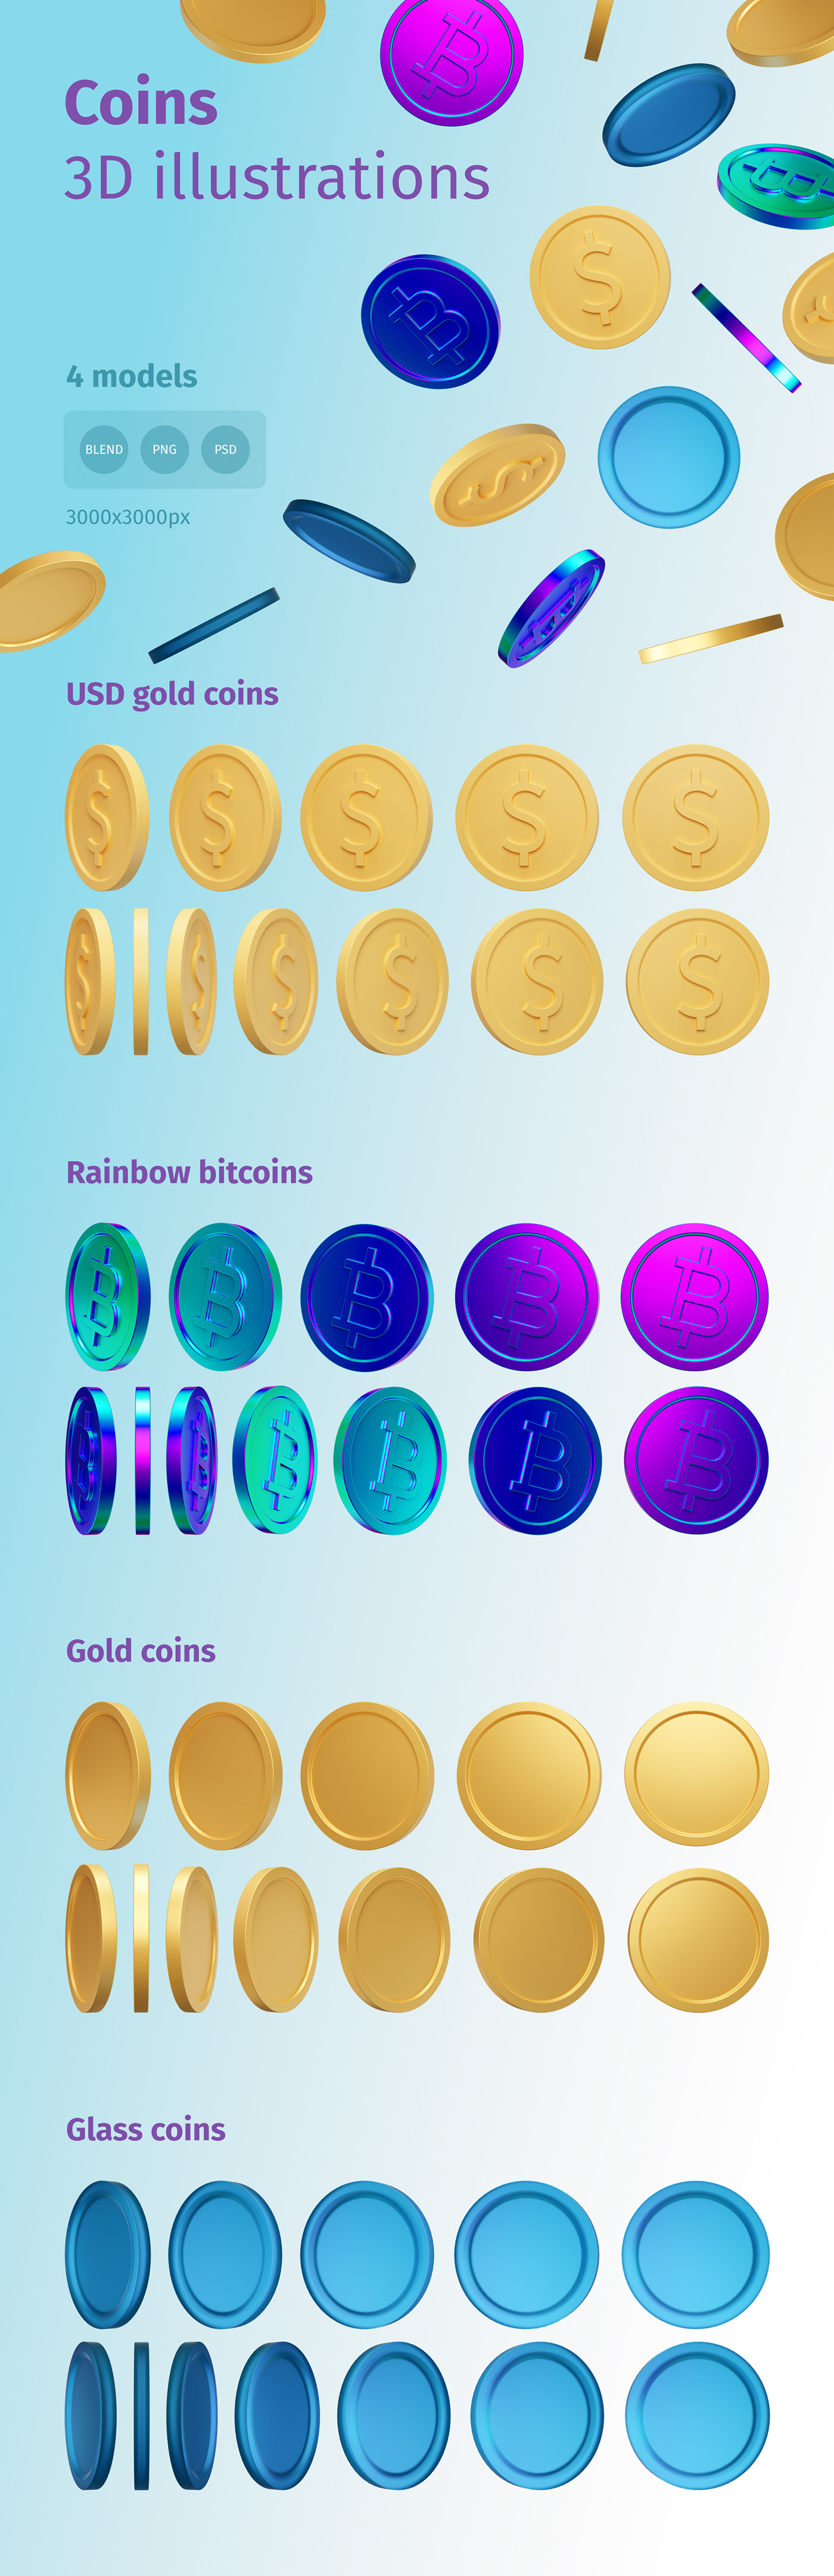 3D renderings gold coins, glass 3d models, dollar 3d money, bitcoin rainbow 3d illustartions